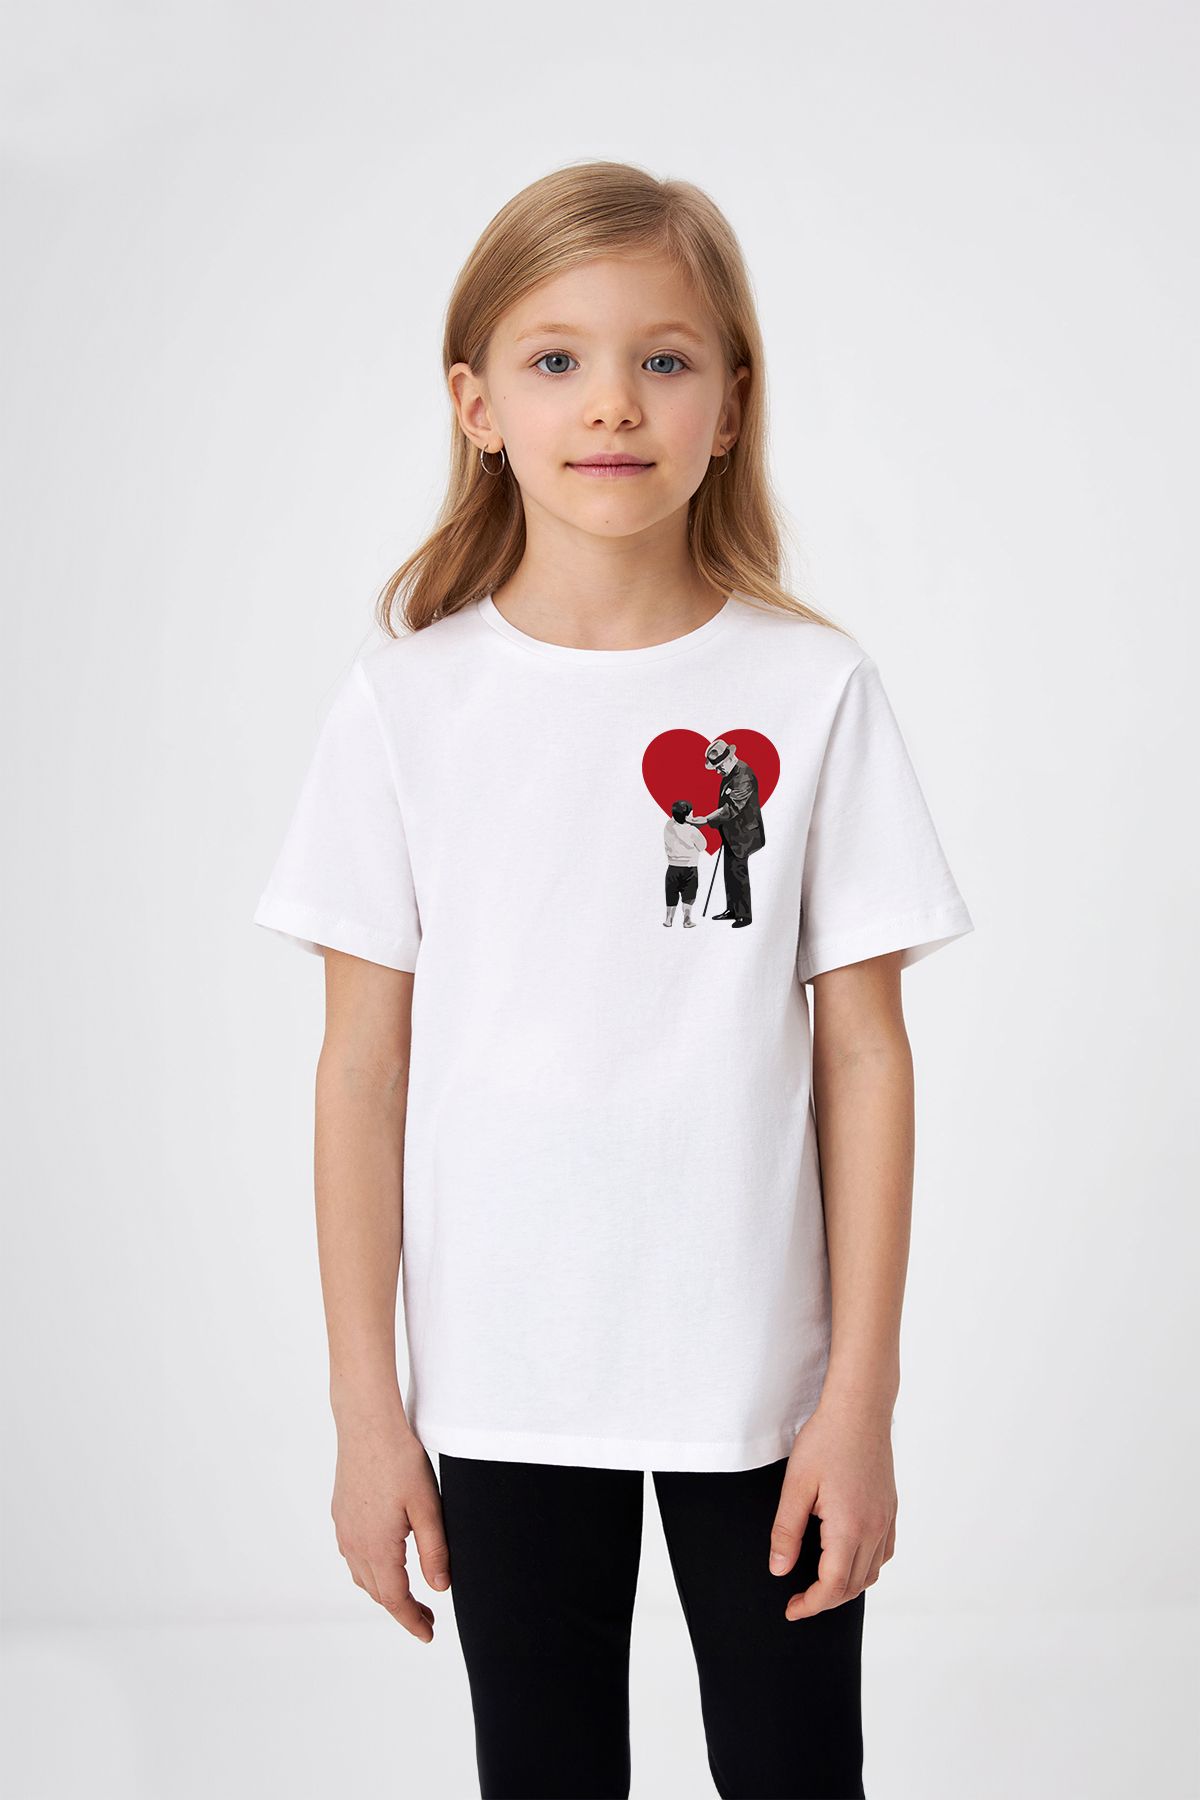 ADABEBEK Mustafa Kemal Atatürk'ün Çocuk Sevgisi Temalı Kalp Detaylı 23 Nisan Özel Baskılı Kız Çocuk Tişört